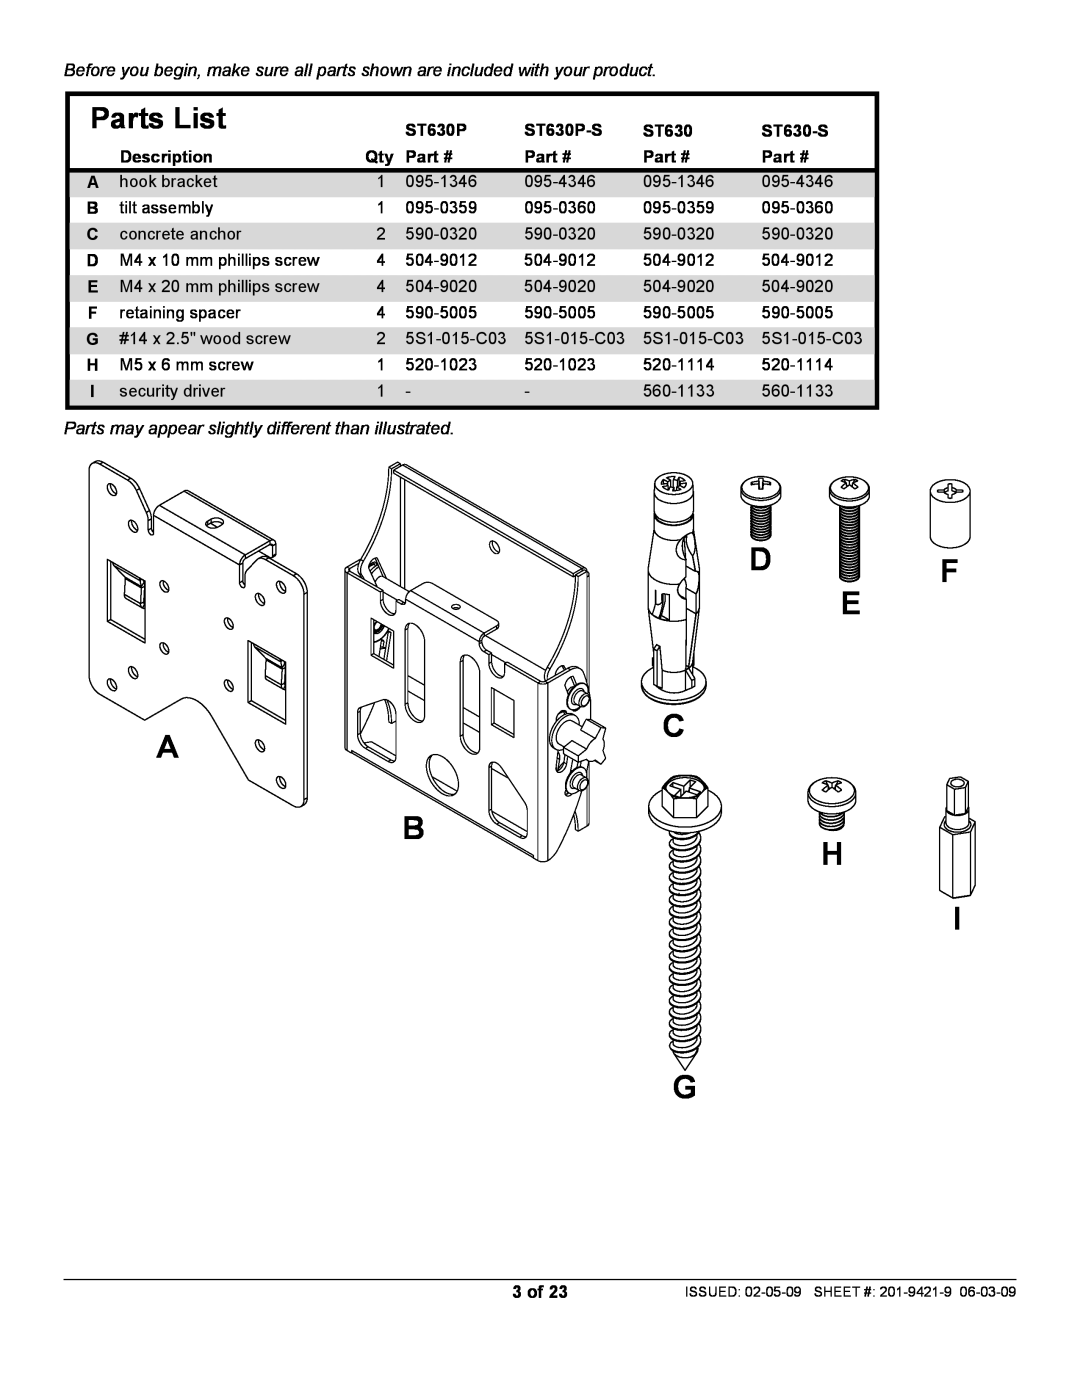 Peerless Industries manual D F E, ST630P-S, ST630-S, Description, 3 of, Parts List 